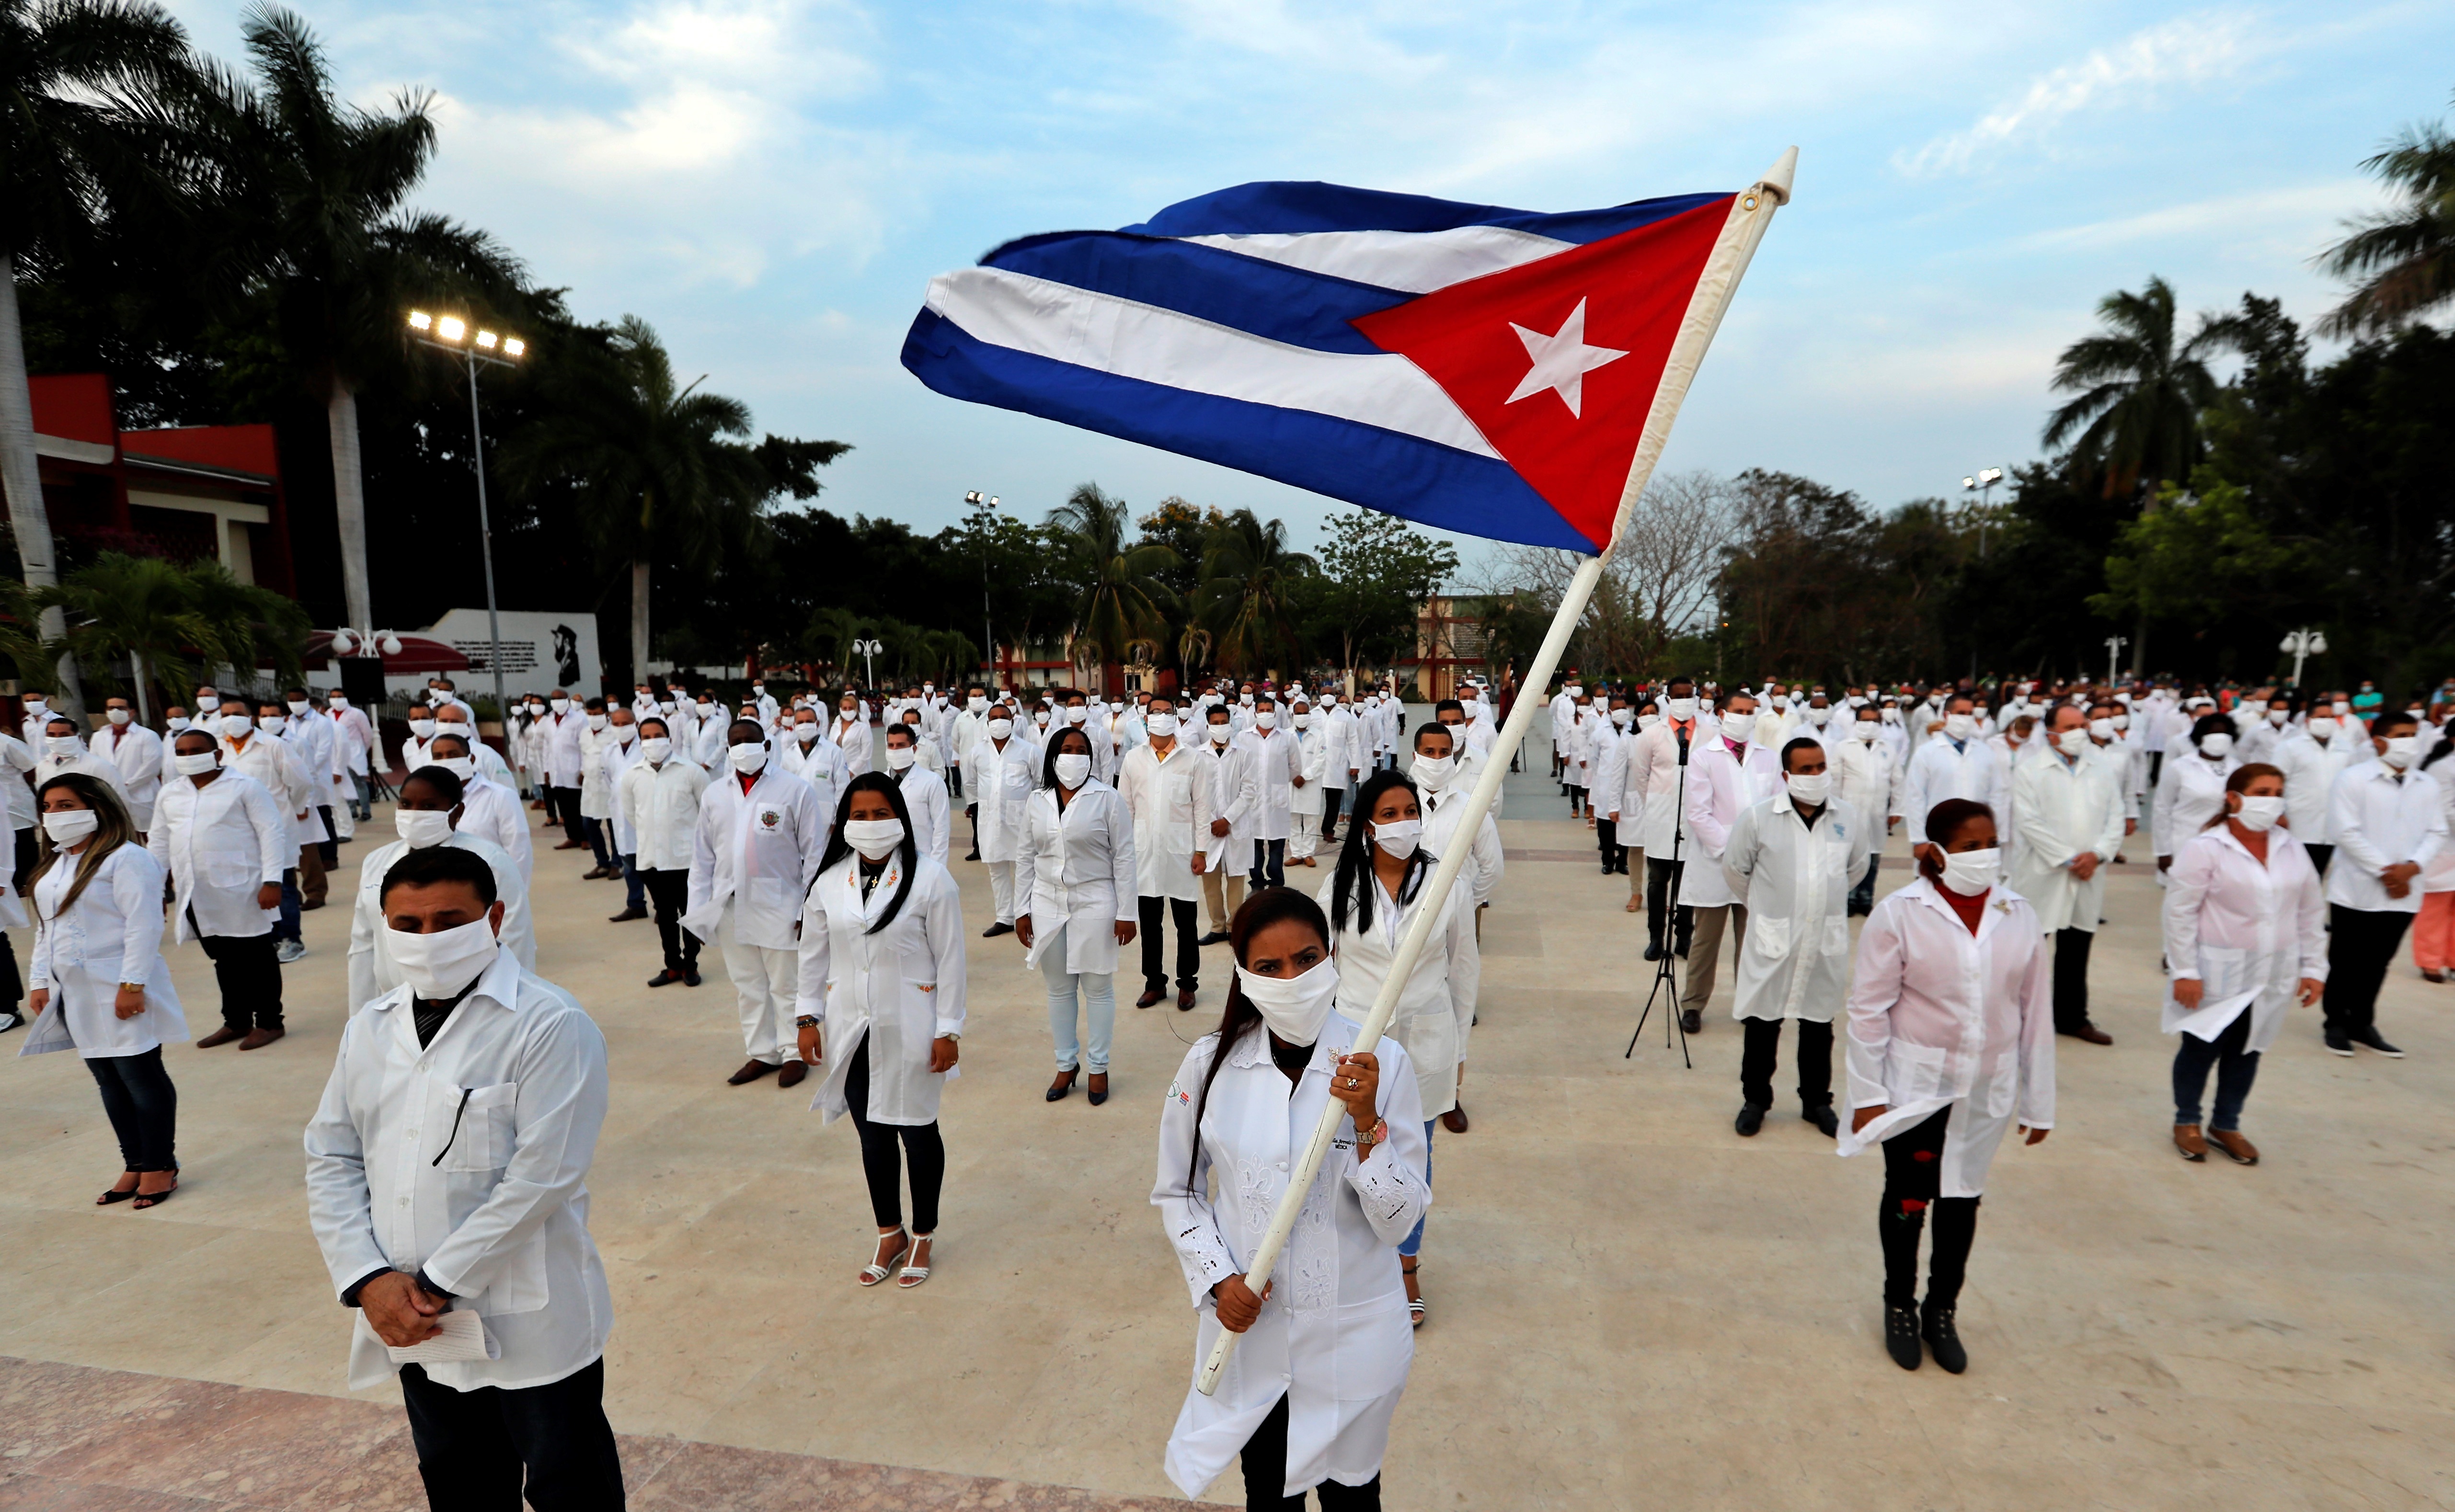 La primera contratación de profesionales cubanos en el país la realizó el gobierno de Michoacán en 2002 (EFE/Ernesto Mastrascusa/Archivo)
